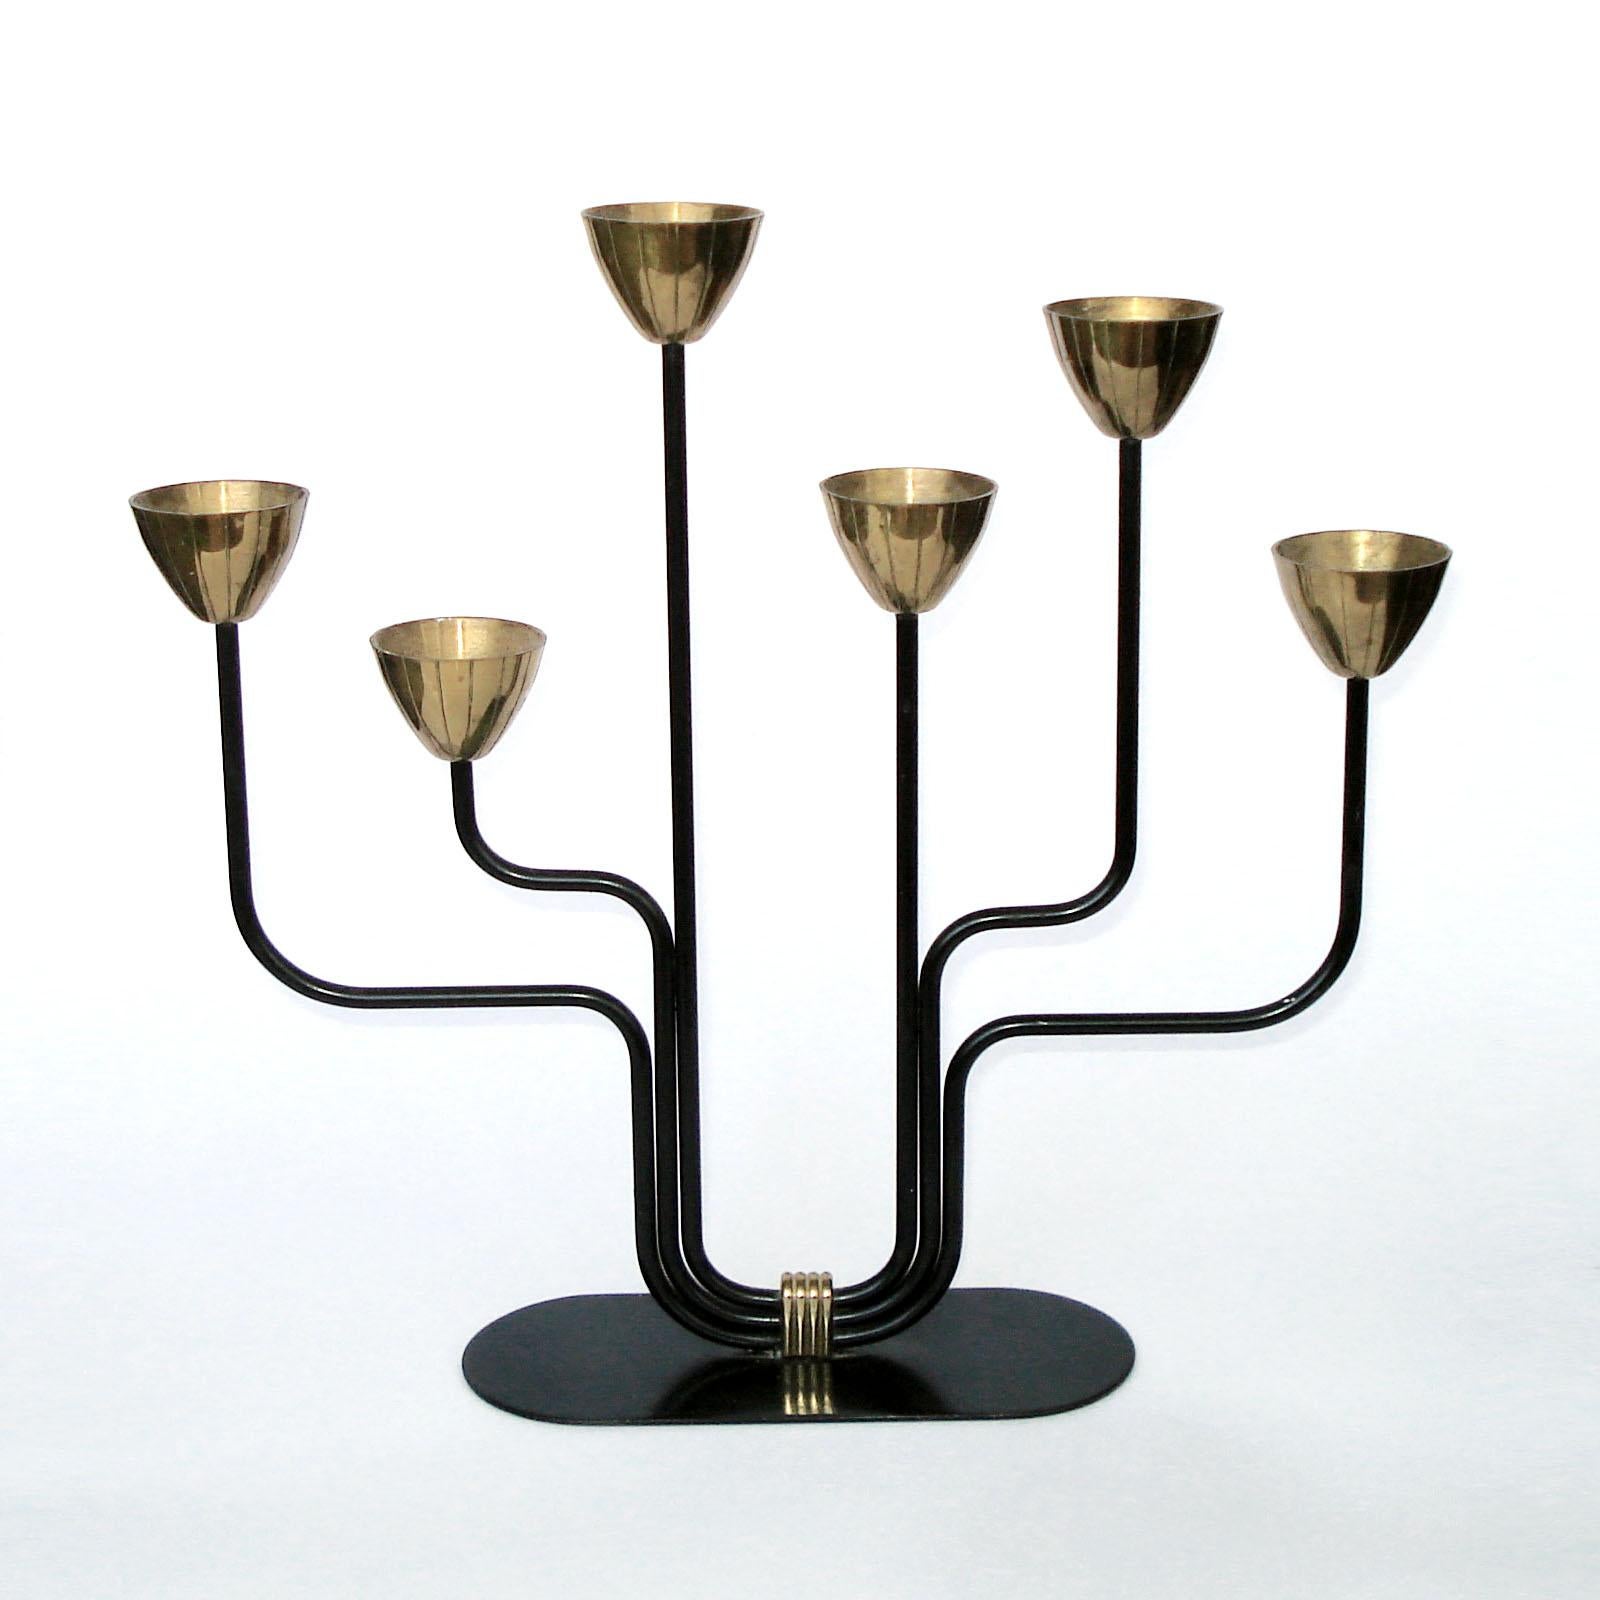 Candélabre en laiton et métal noirci pour bougies fines. Conçu par Gunnar Ander pour Ystad Metall Suède. Estampillé 